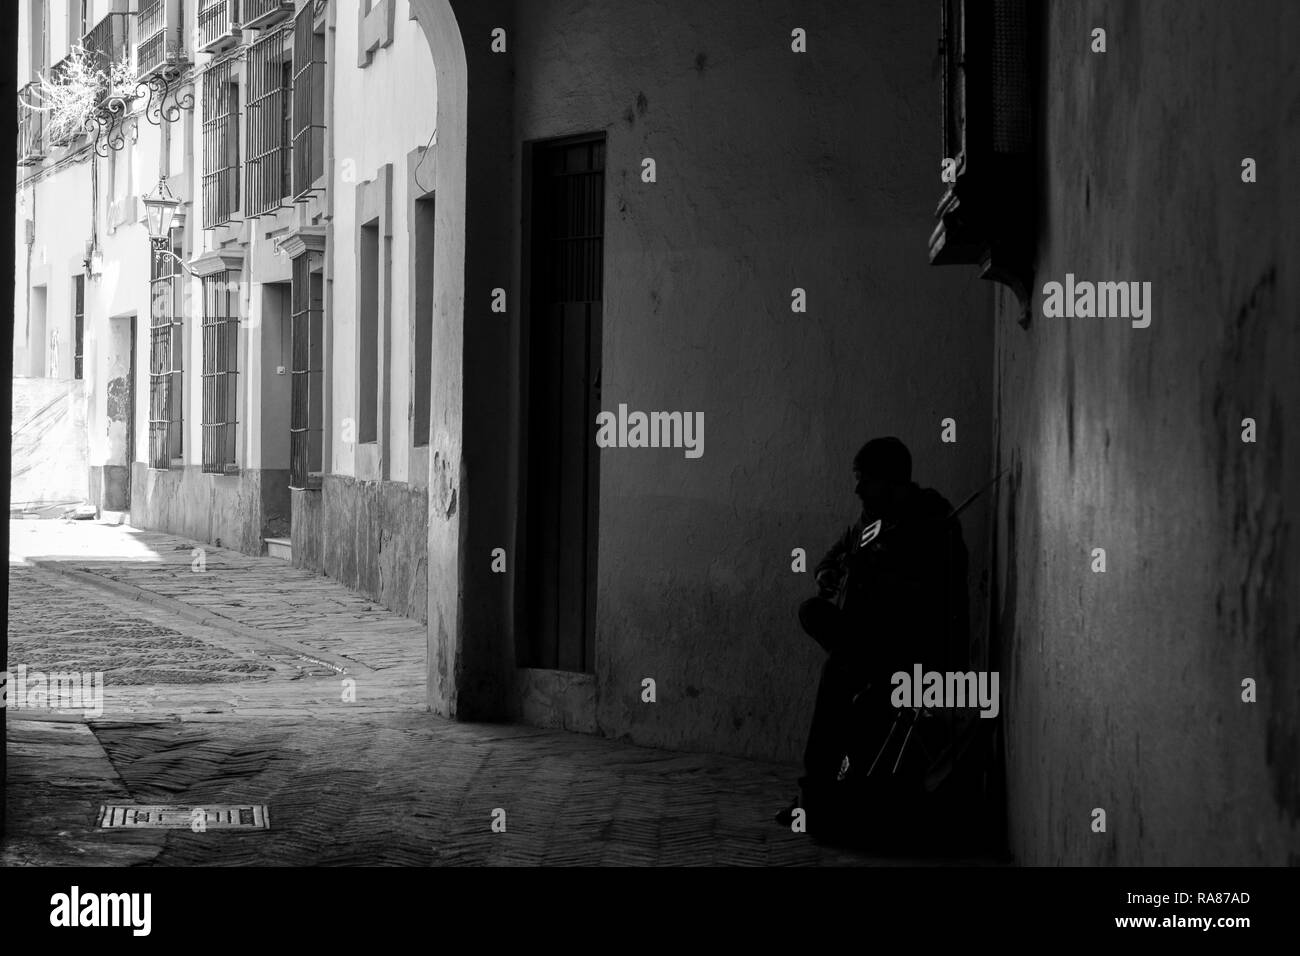 Un uomo a suonare la chitarra al di sotto di uno dei numerosi archi nelle strade di la Juderia, un quartiere di Siviglia. Immagine in bianco e nero. Foto Stock